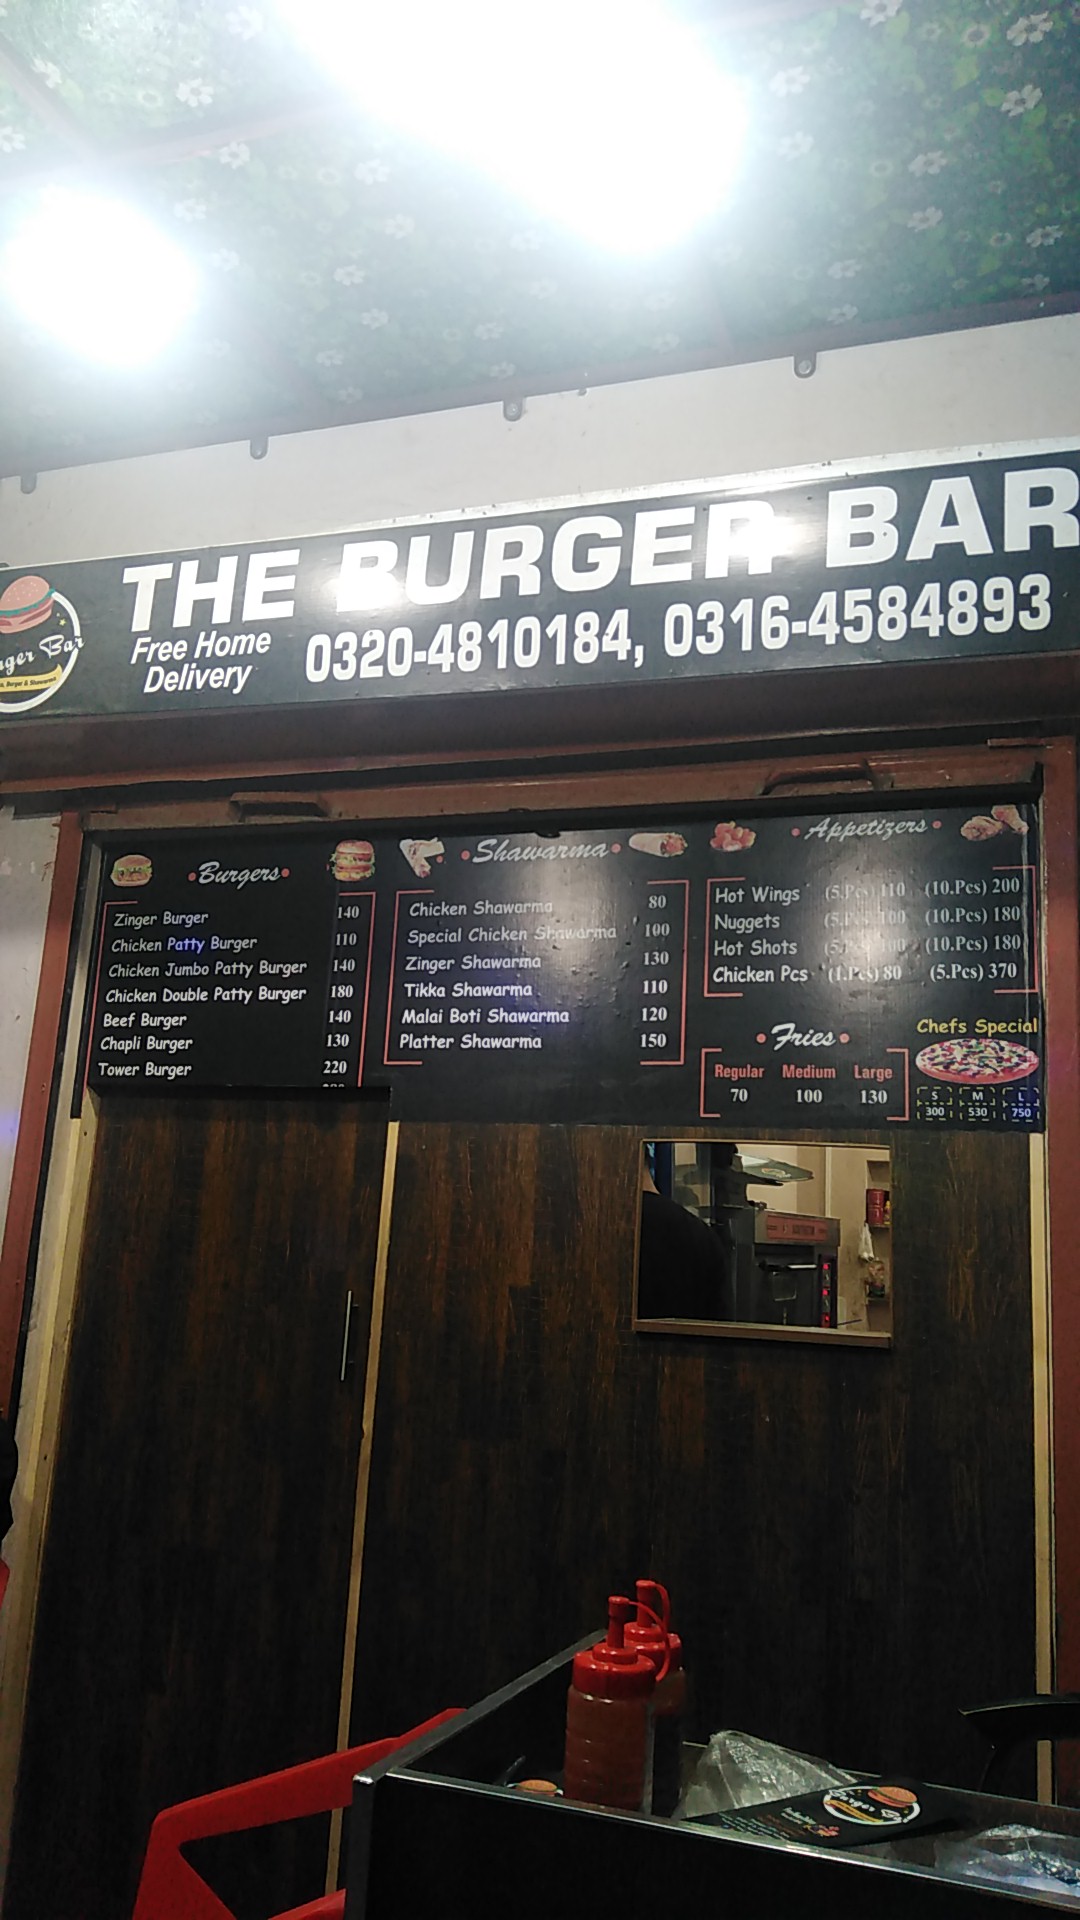 The Burger Bar